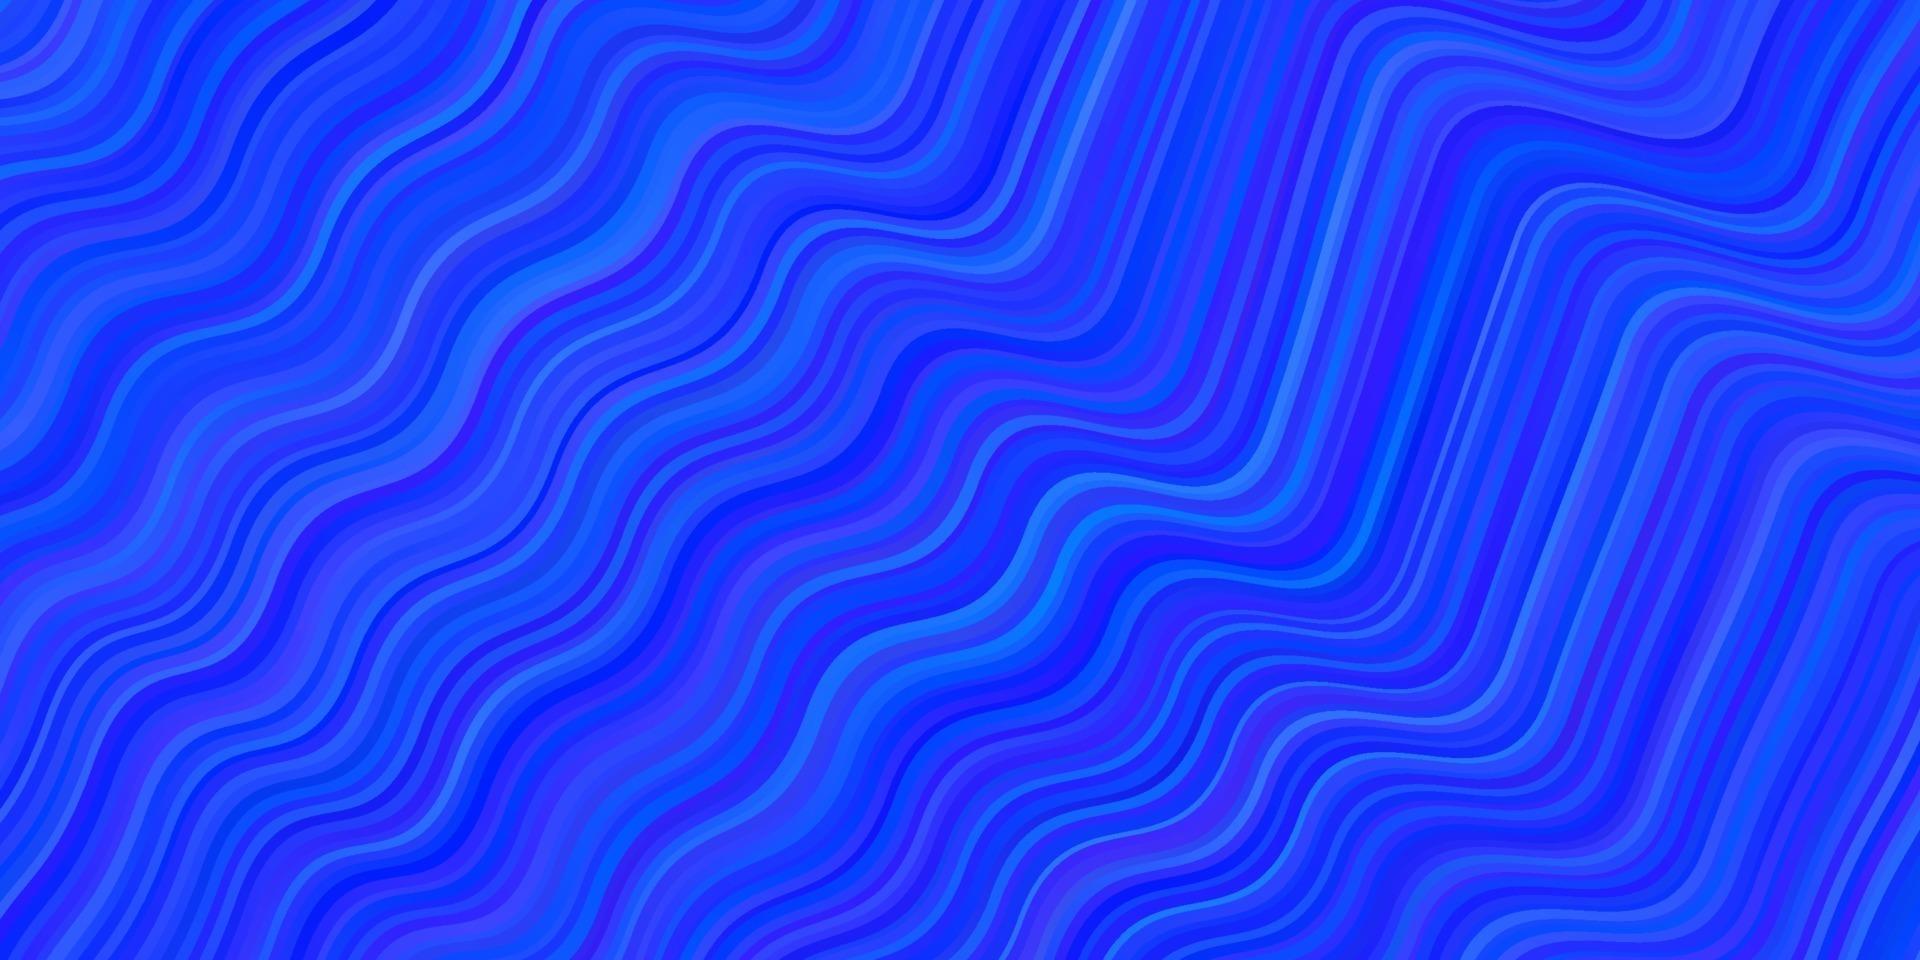 ljusblå vektorbakgrund med sneda linjer. vektor